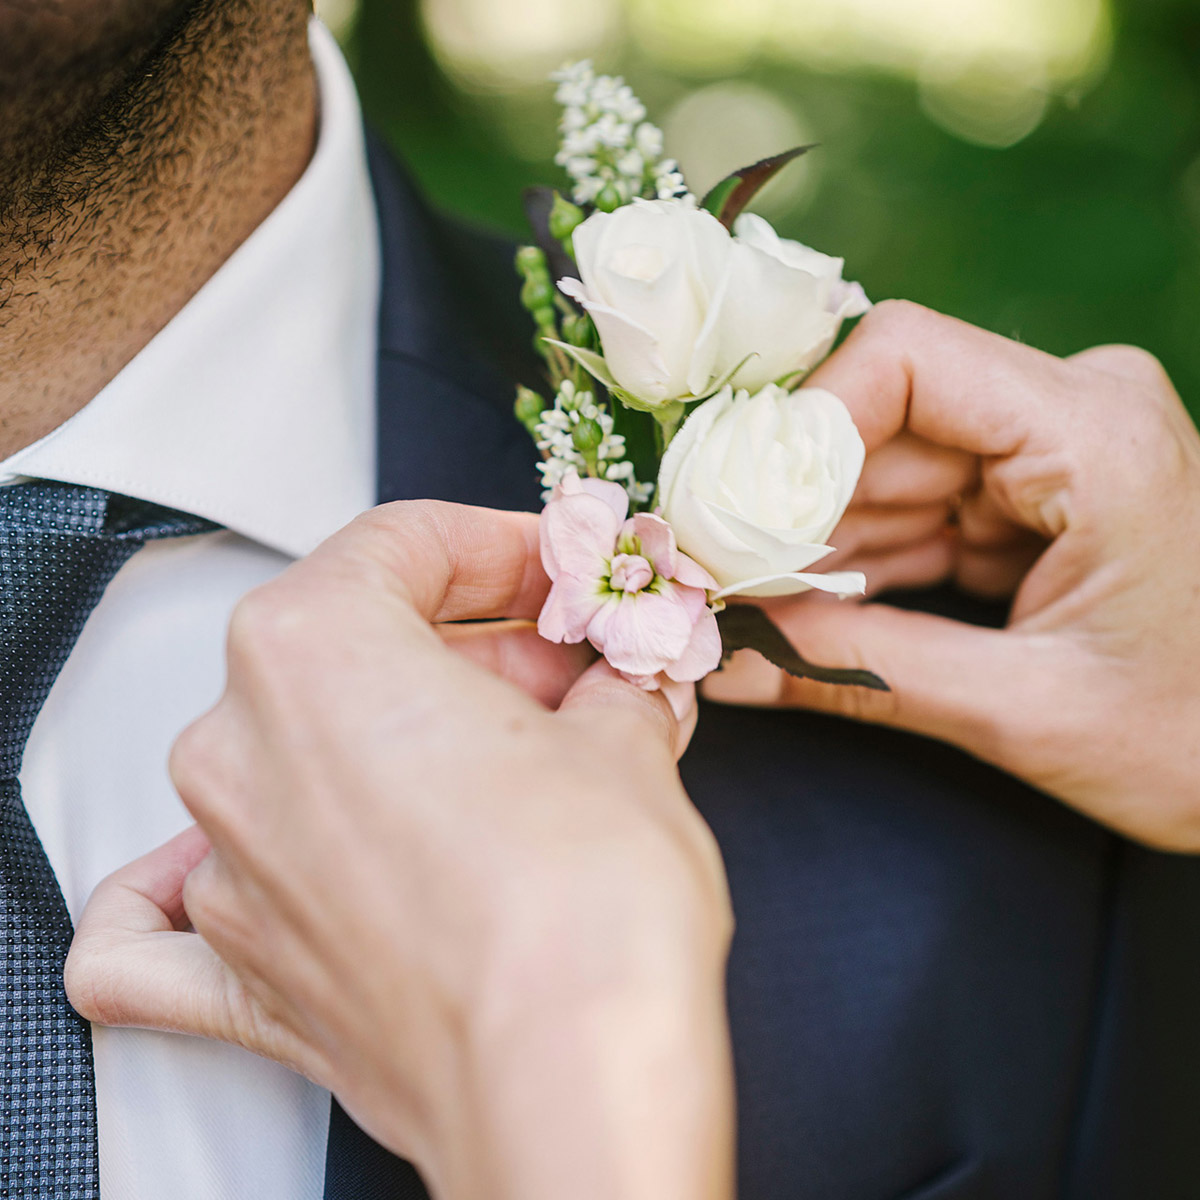 Hochzeitsblumen: Die Braut befestigt den Anstecker für den Bräutigam mit crémefarbenen Rosen. DER HOCHZEITSFOTOGRAF AUS BERLIN ZEIGT DIESE HOCHZEITSREPORTAGE IM BLOG. © www.hochzeitslicht.de #hochzeitslicht